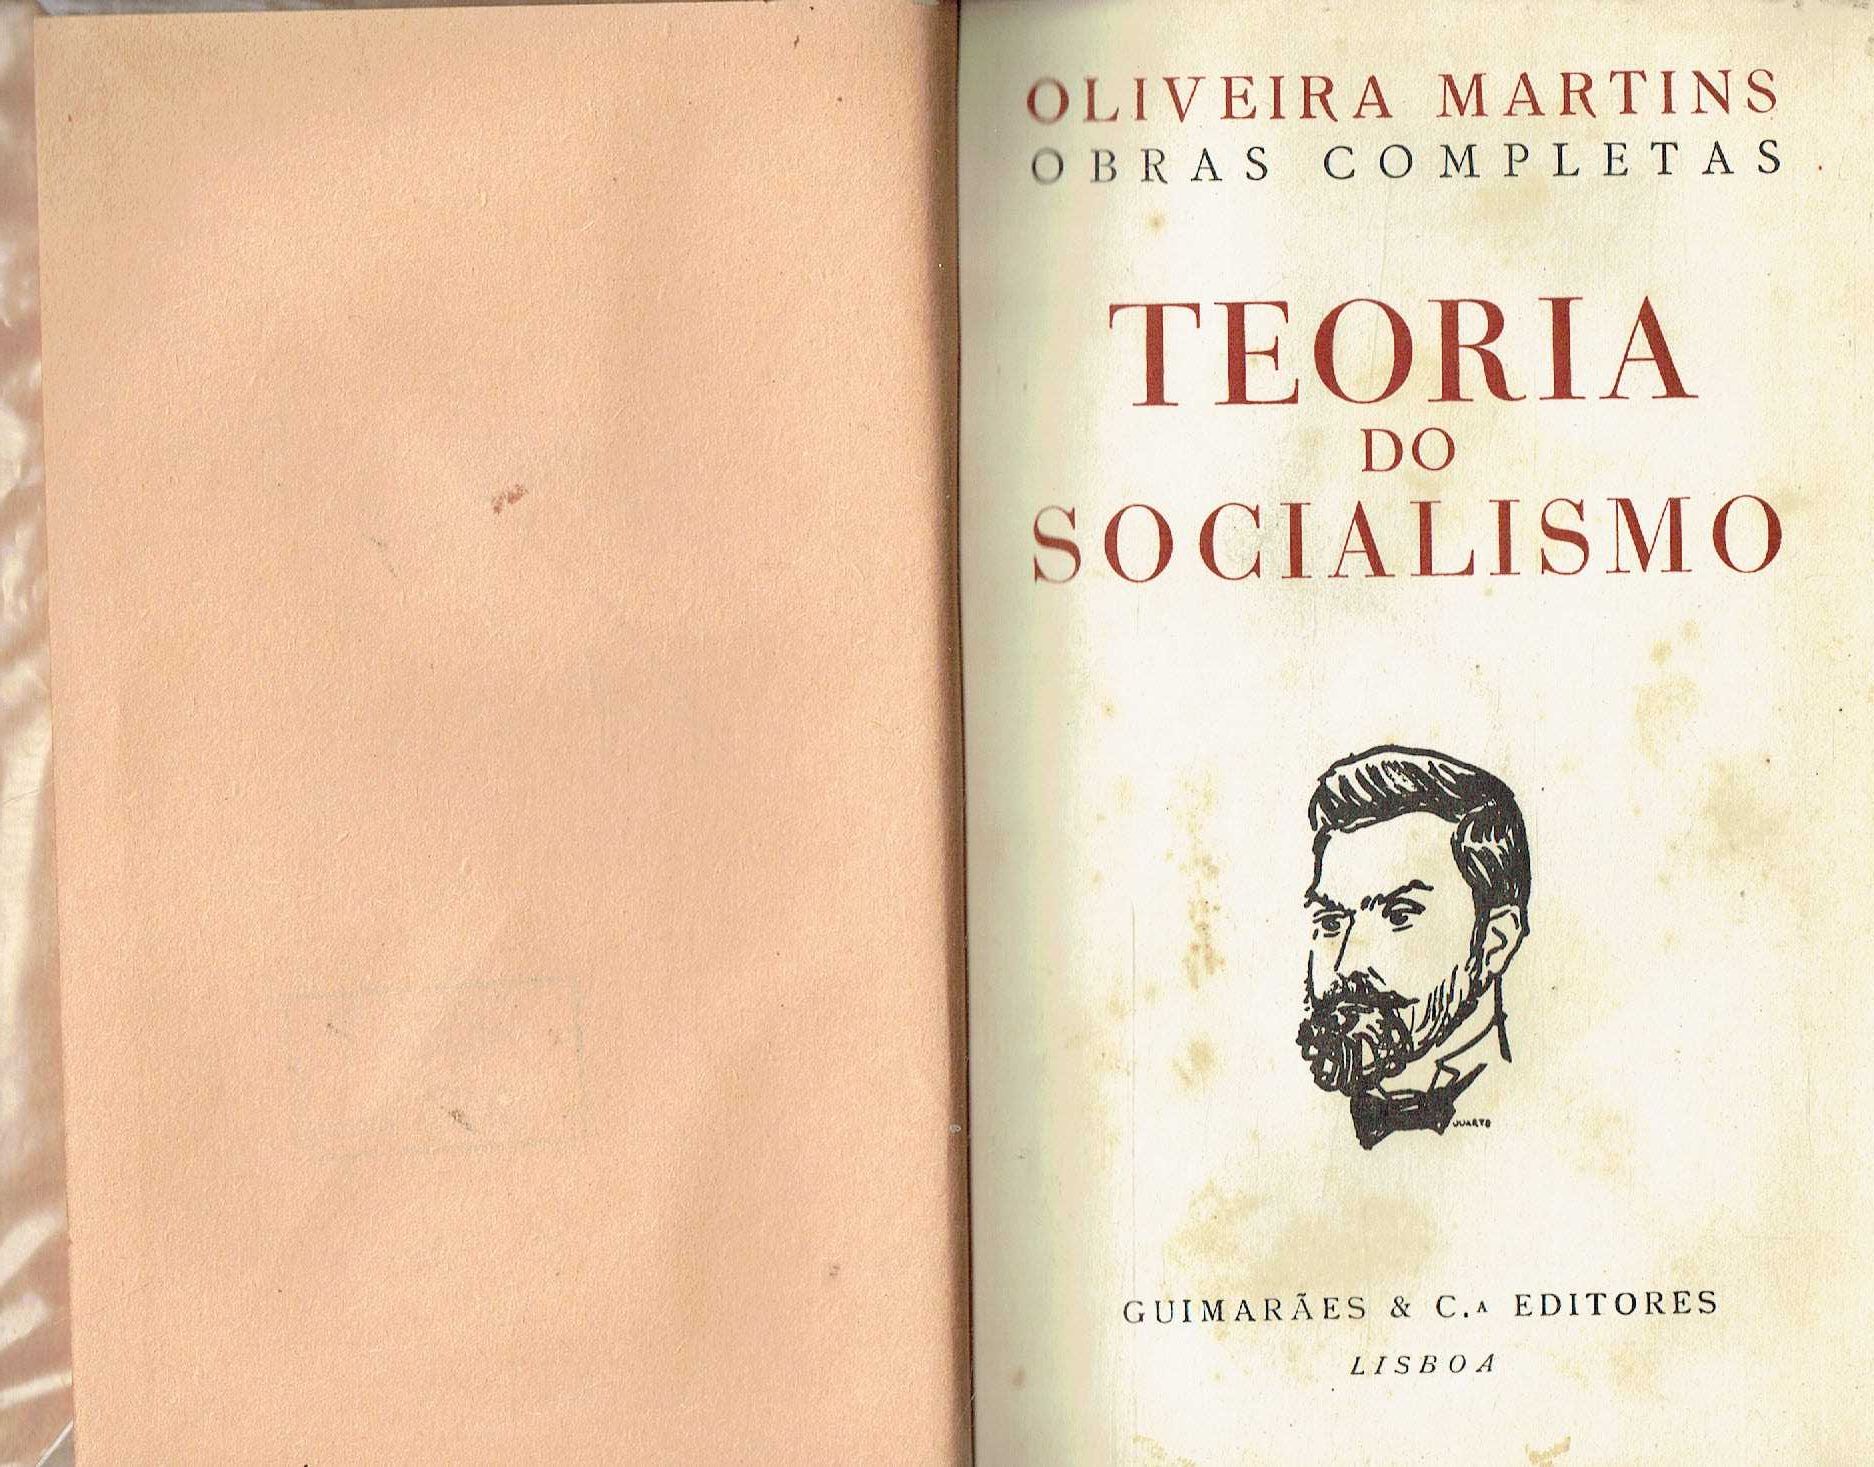 7837
	
Teoria do socialismo 
de Oliveira Martins